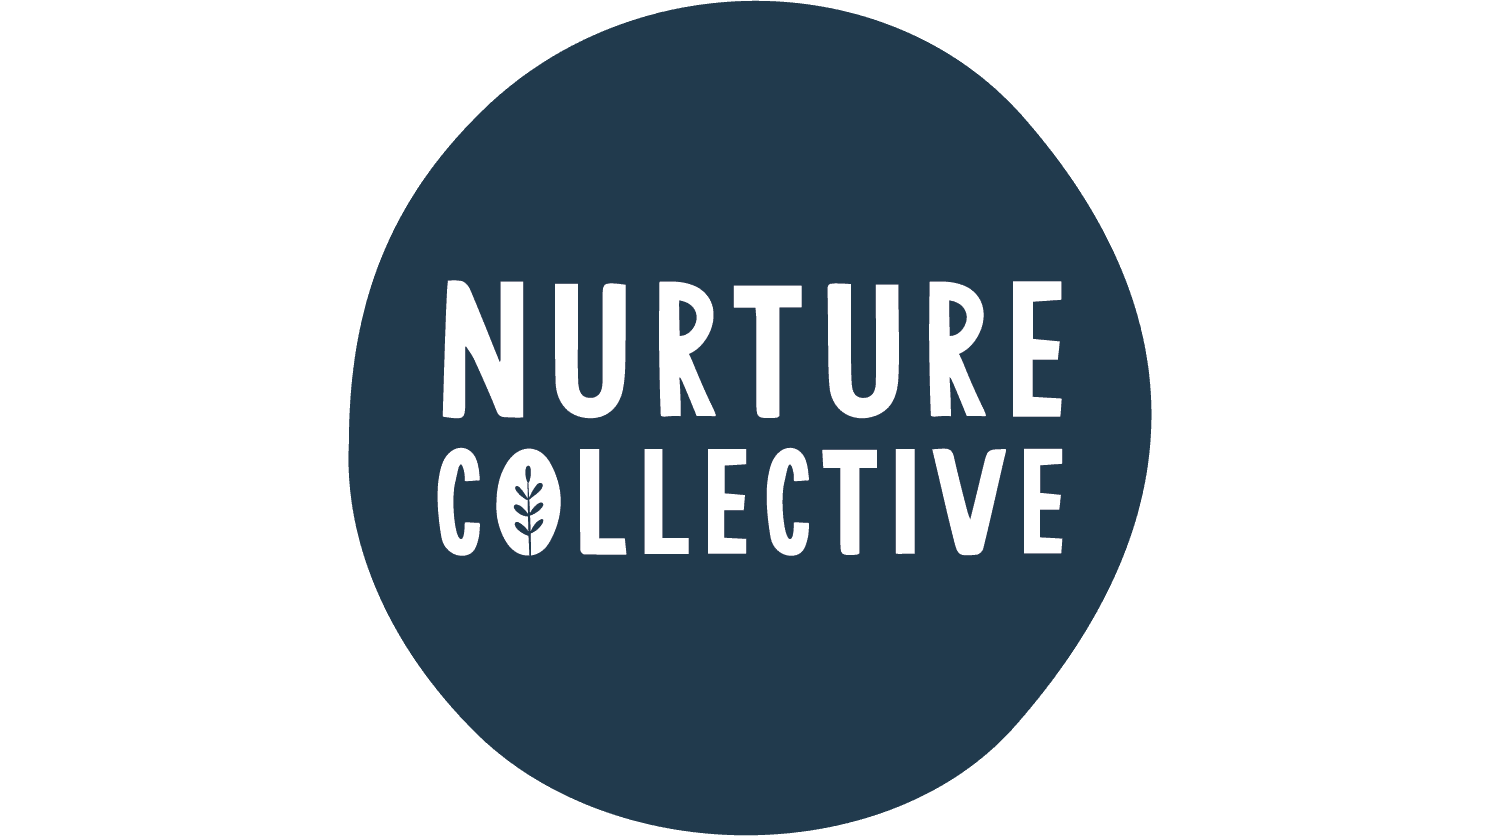 Nurture Collective